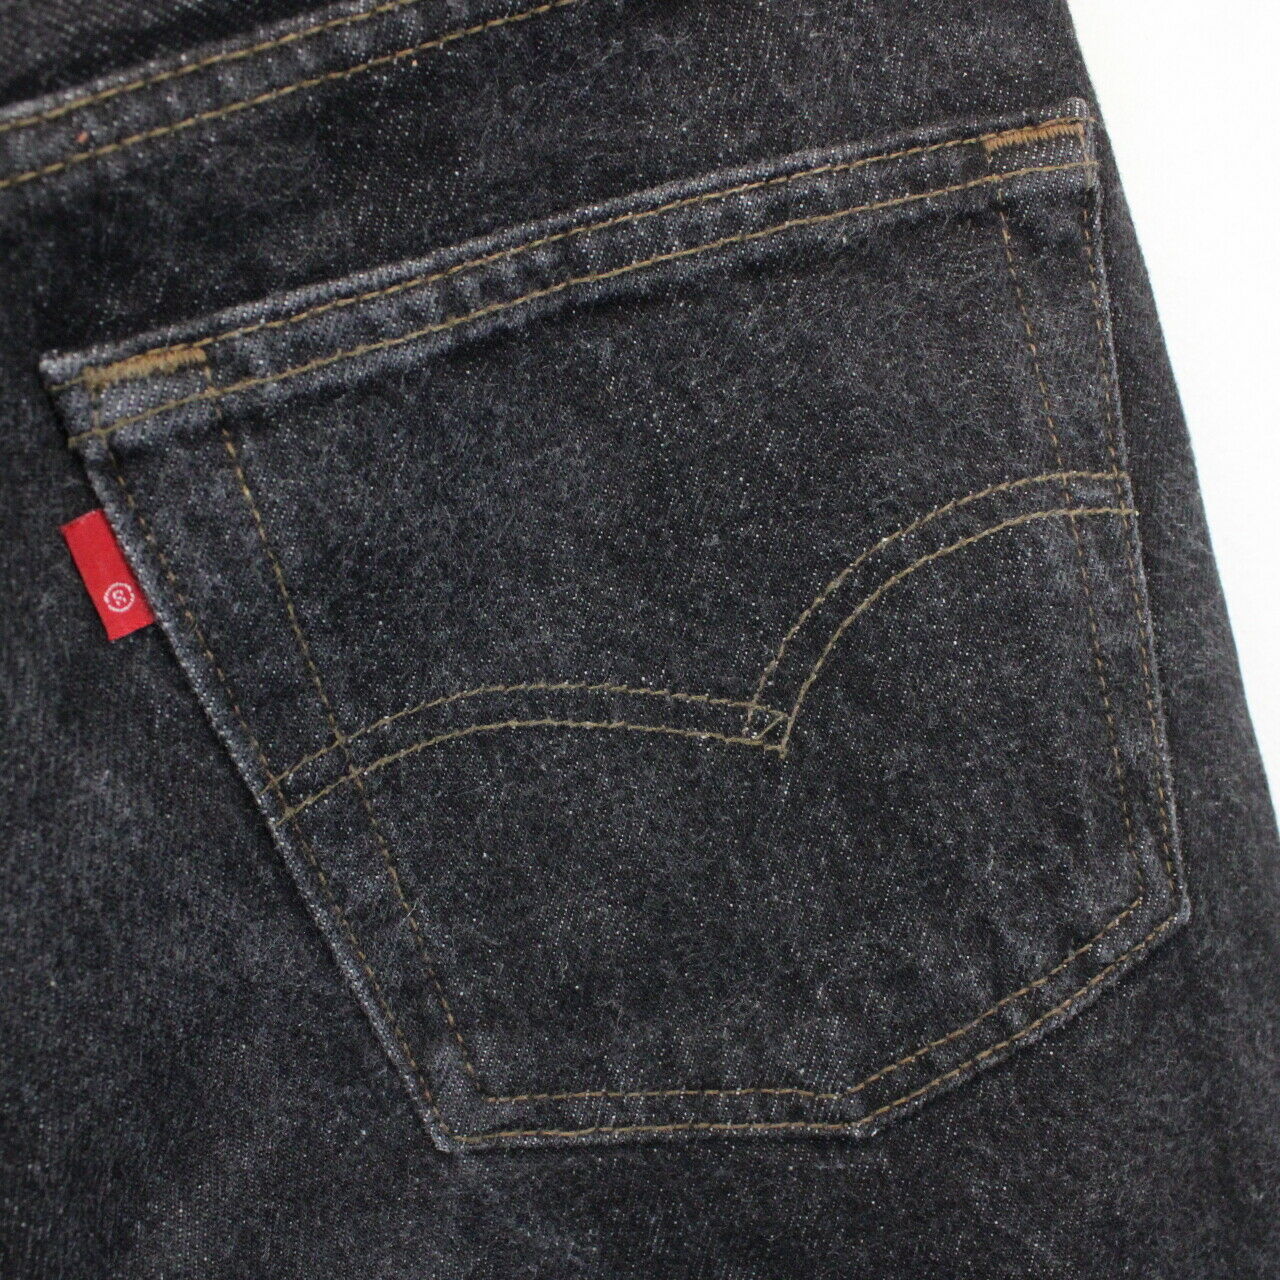 Womens LEVIS 501 Jeans Black Charcoal | W28 L24